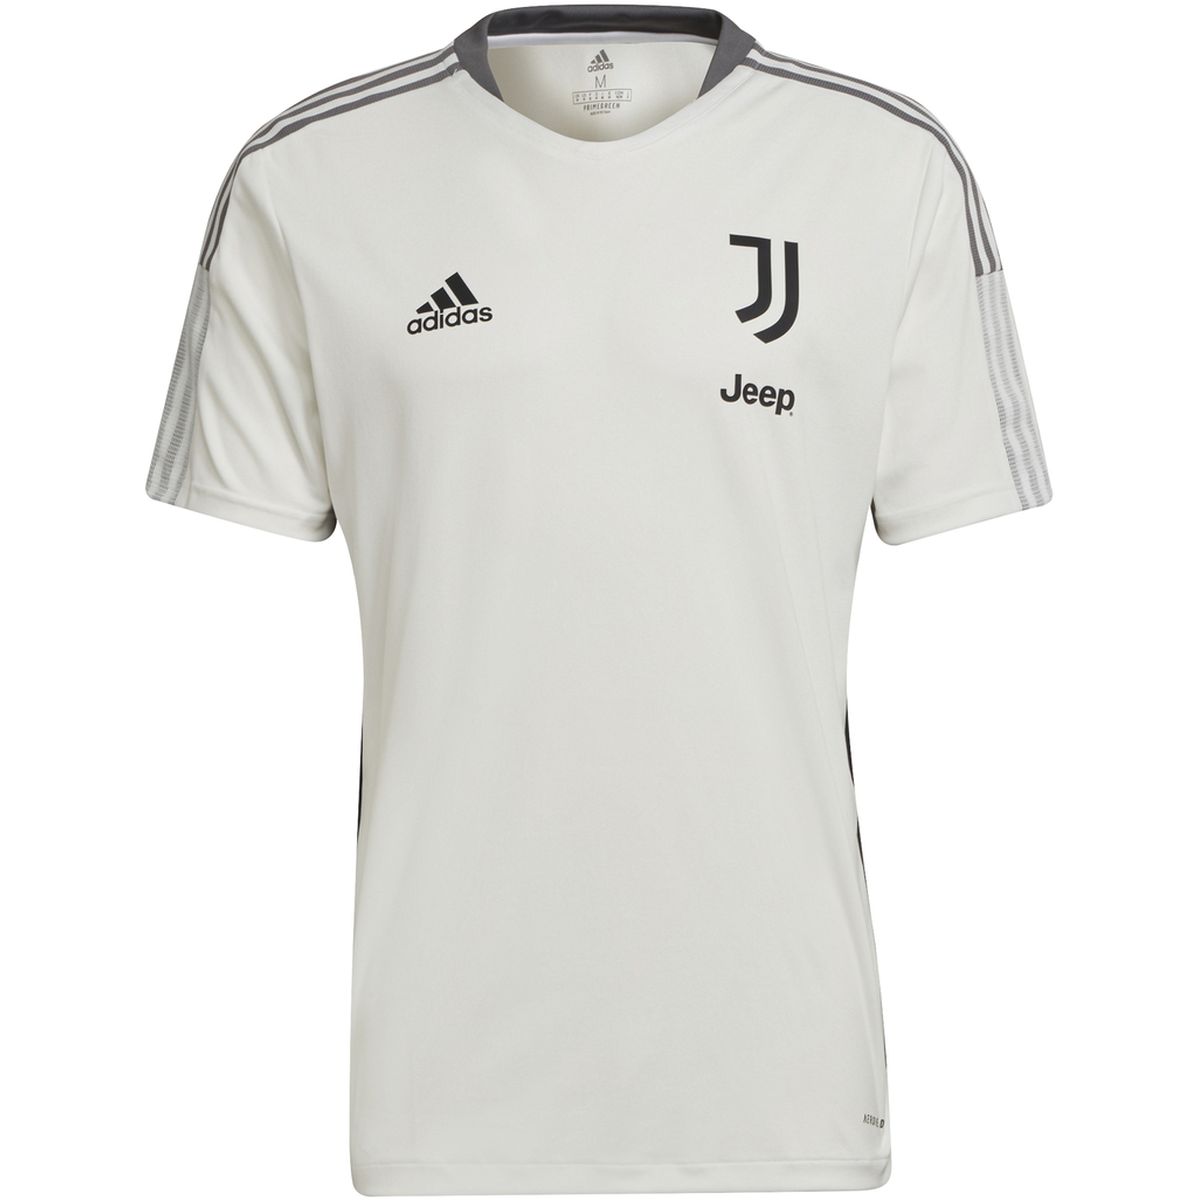 Adidas Juventus Turin Tiro Trainingstrikot Herren